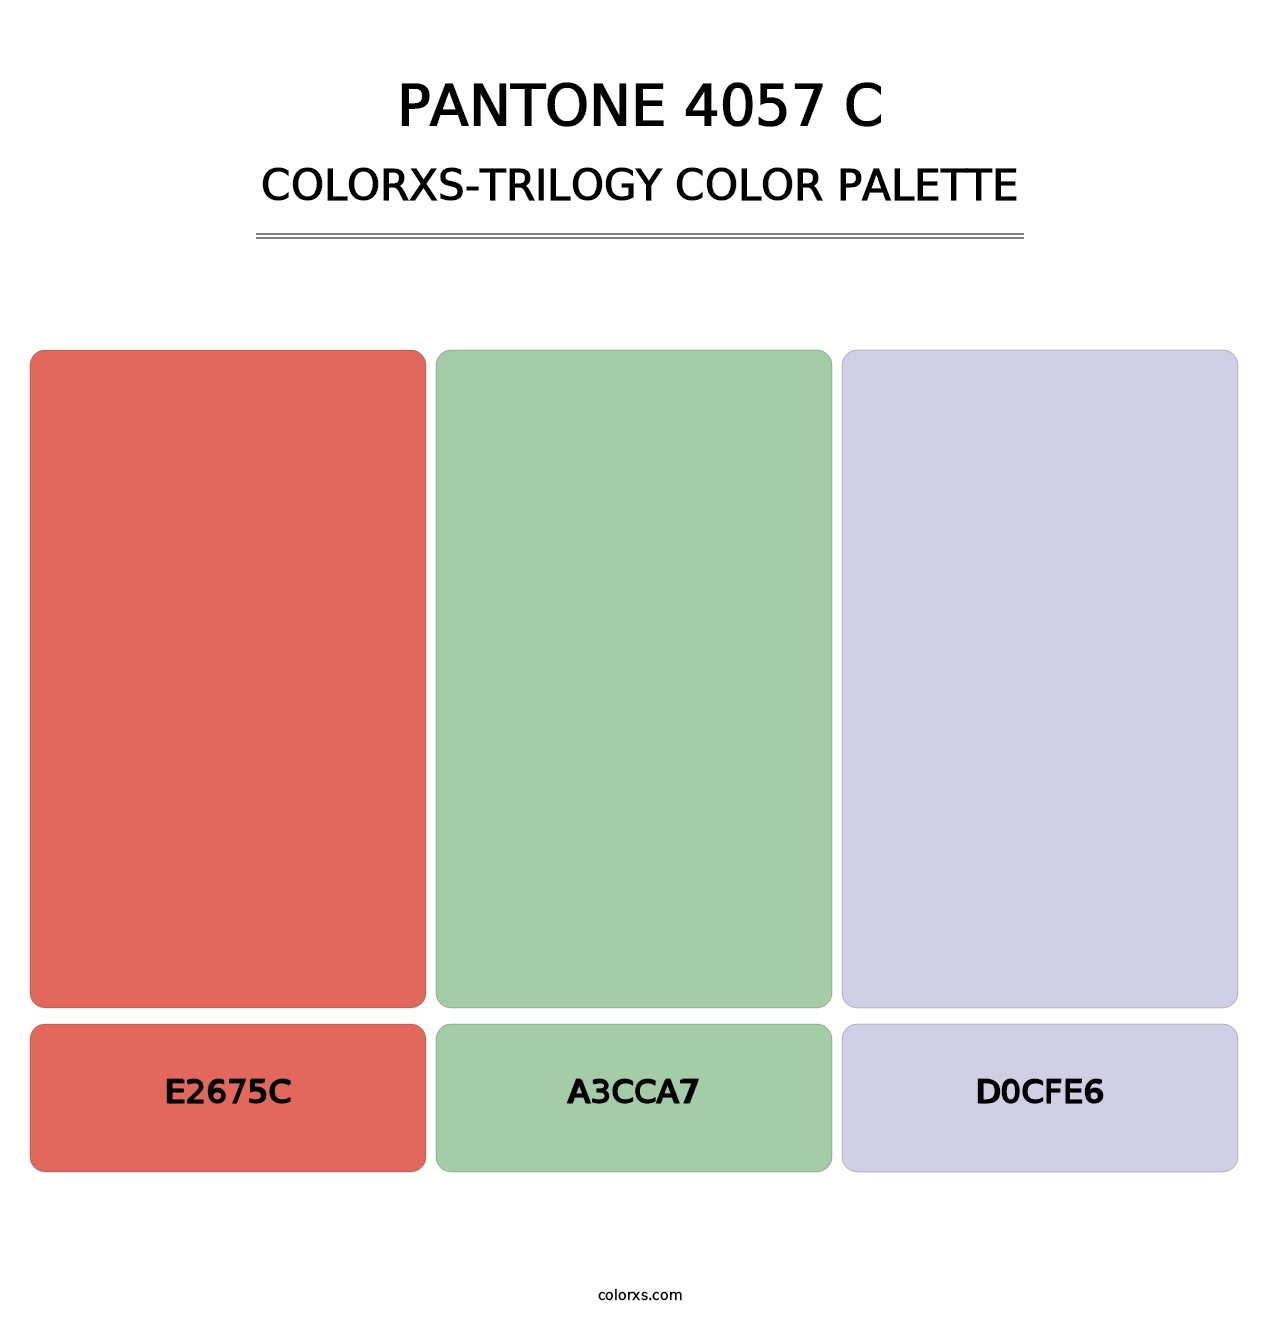 PANTONE 4057 C - Colorxs Trilogy Palette